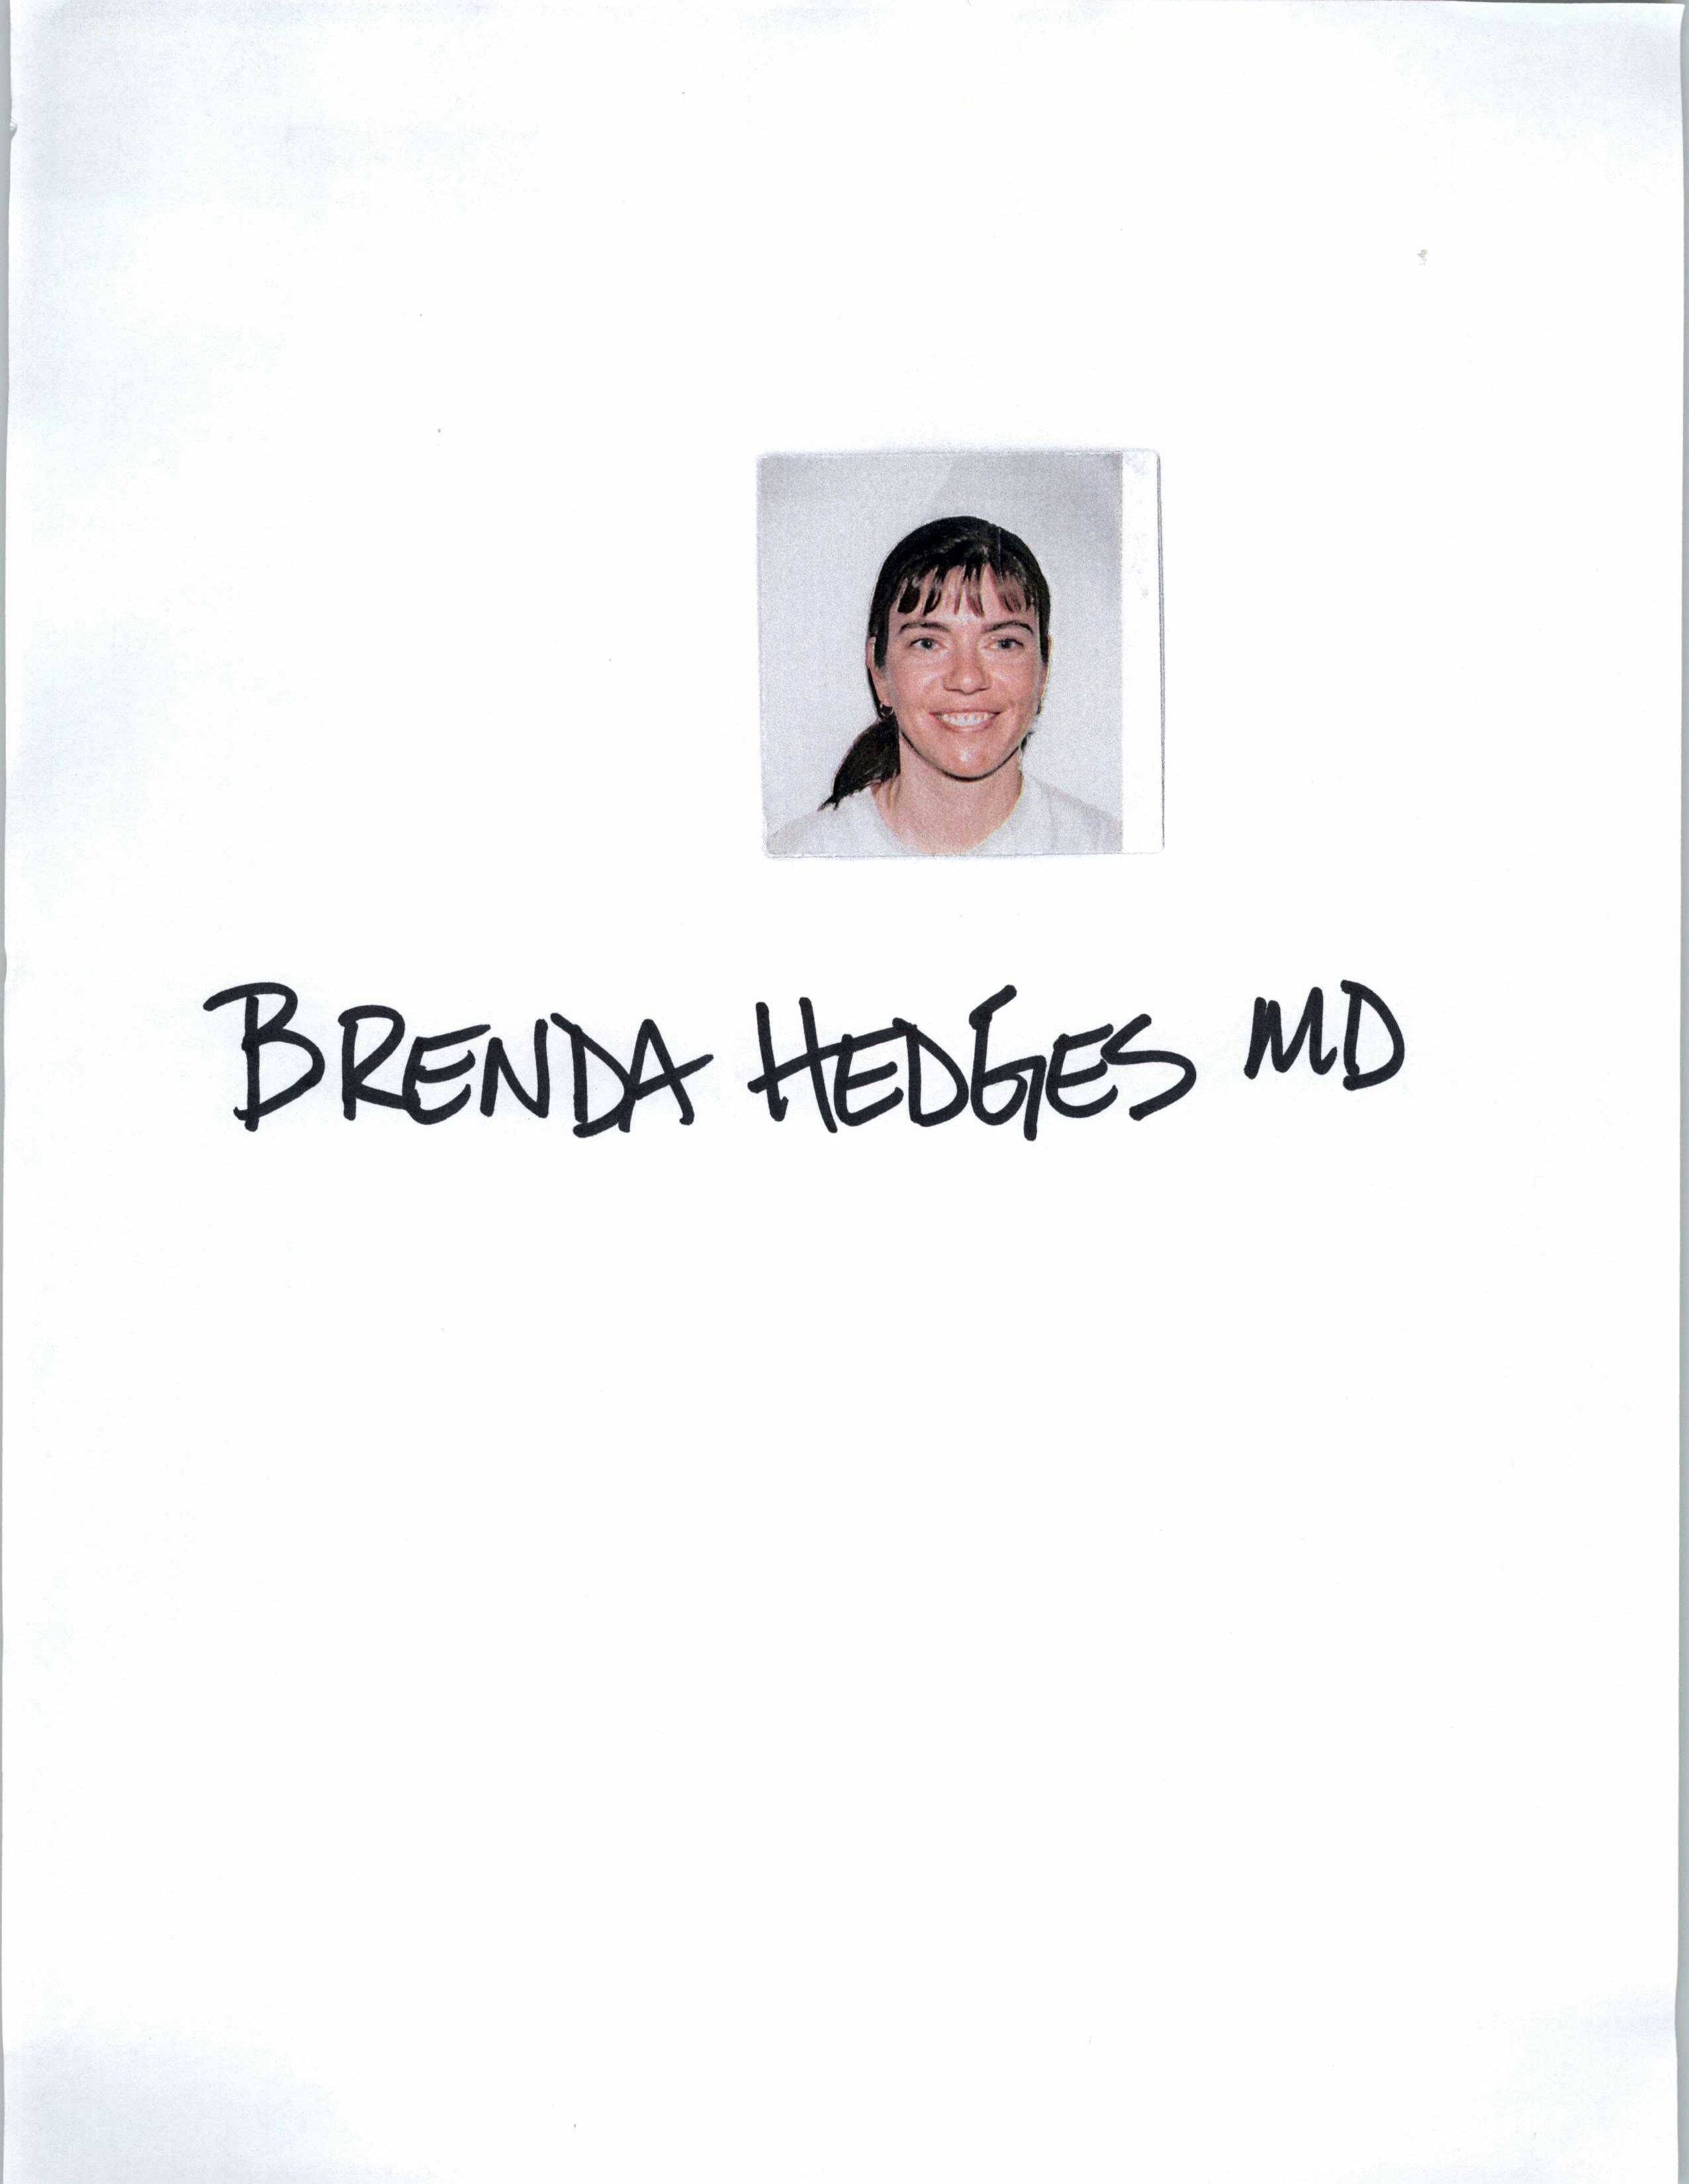 Brenda Hedges, MD